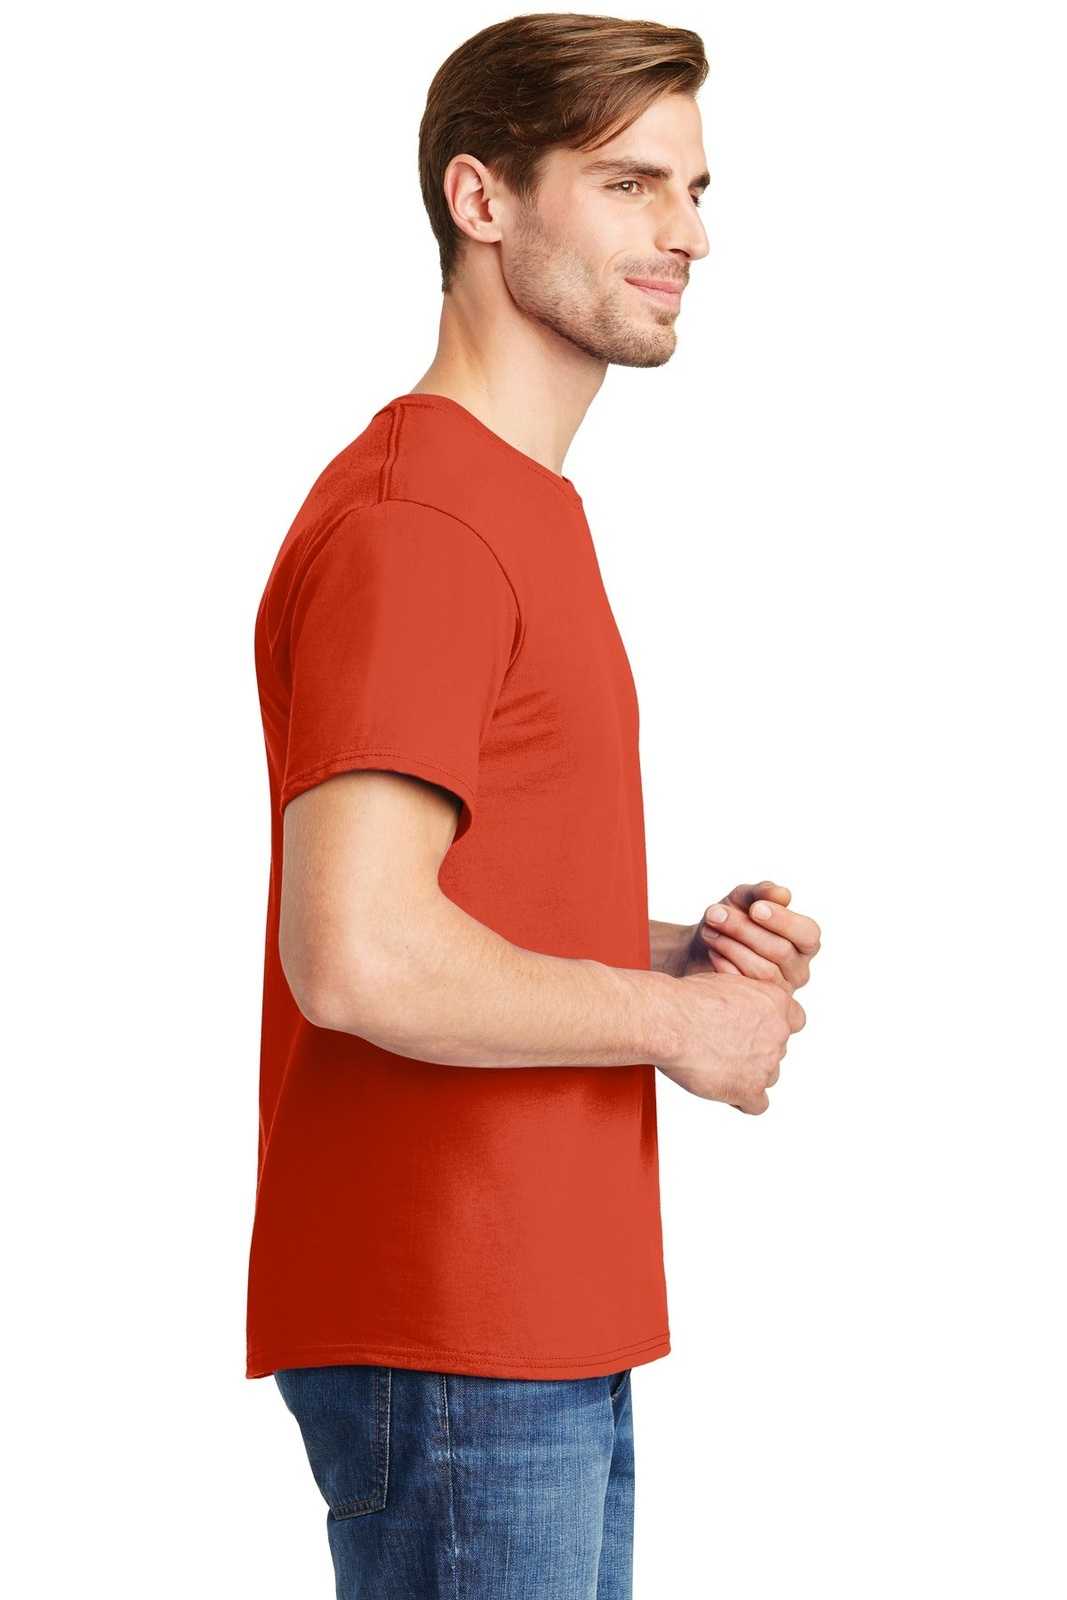 Hanes 5280 Comfortsoft 100% Cotton T-Shirt - Orange - HIT a Double